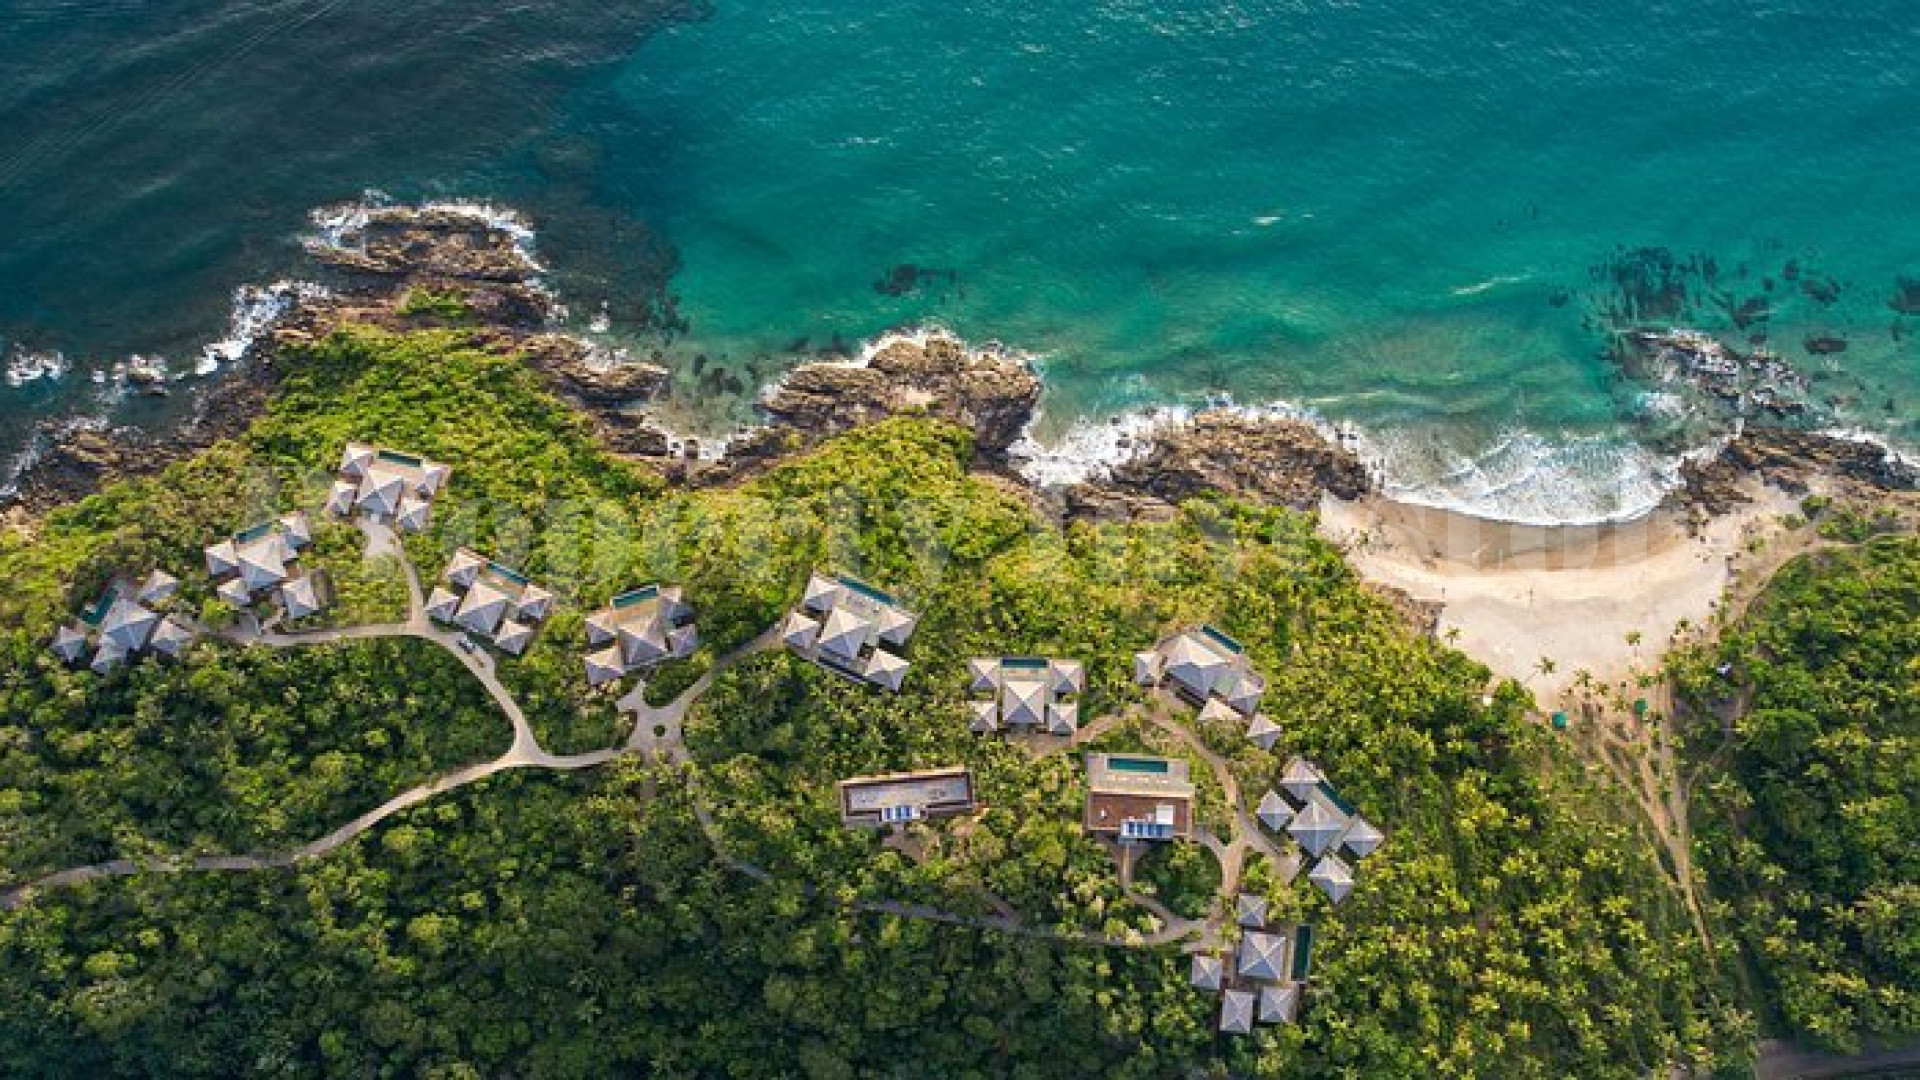 Продаётся восхитительная роскошная курортная вилла на 6 спален на пляже в Итакаре, Бразилия